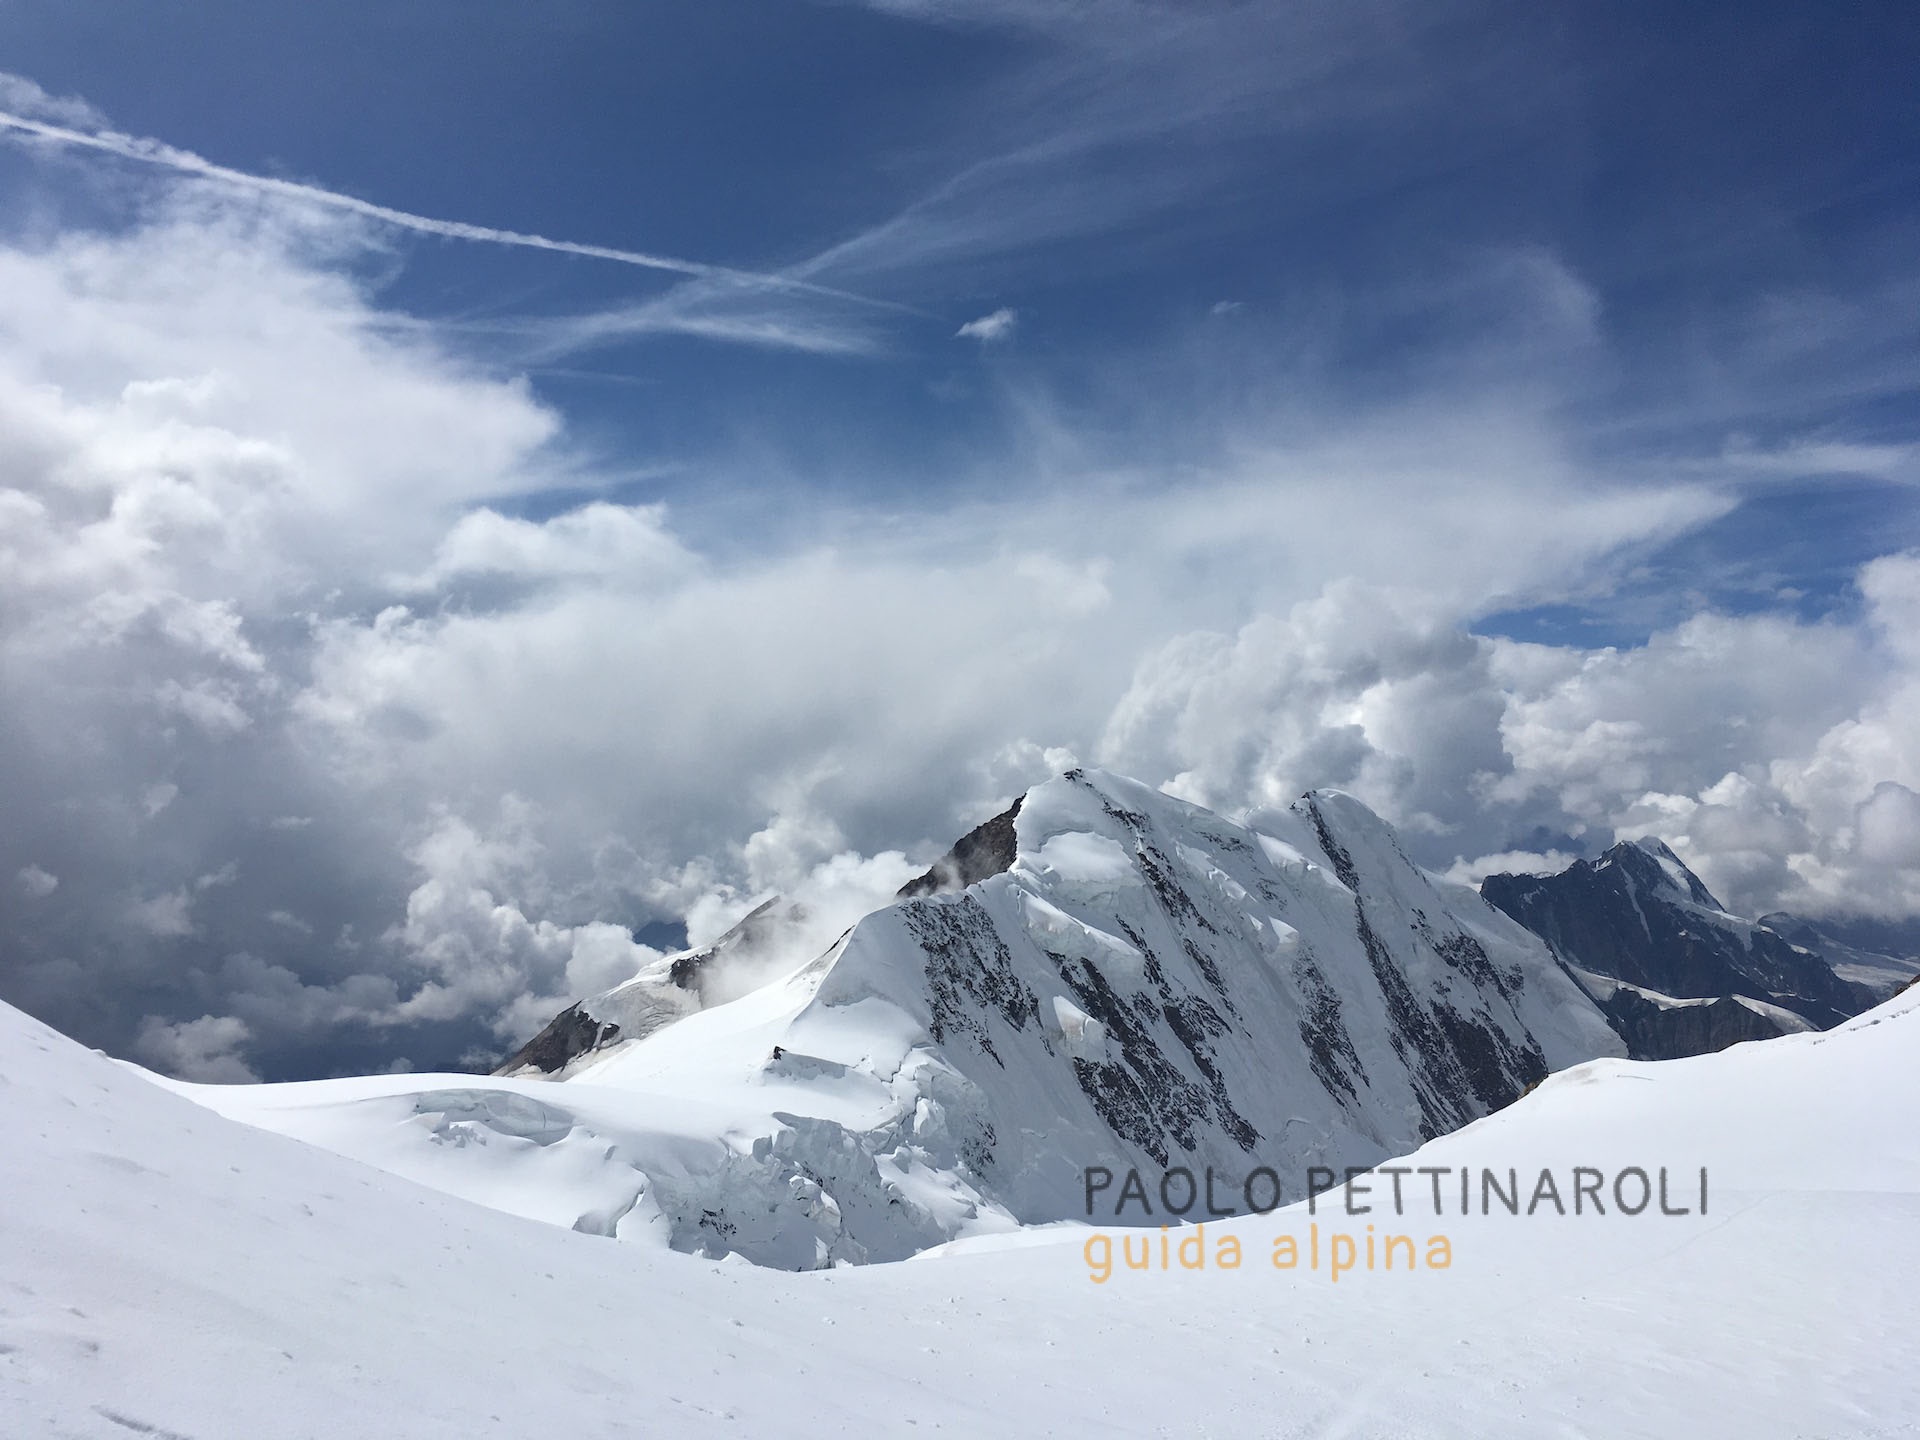 IMG_2544-collaborazioni_paolo pettinaroli guida alpina